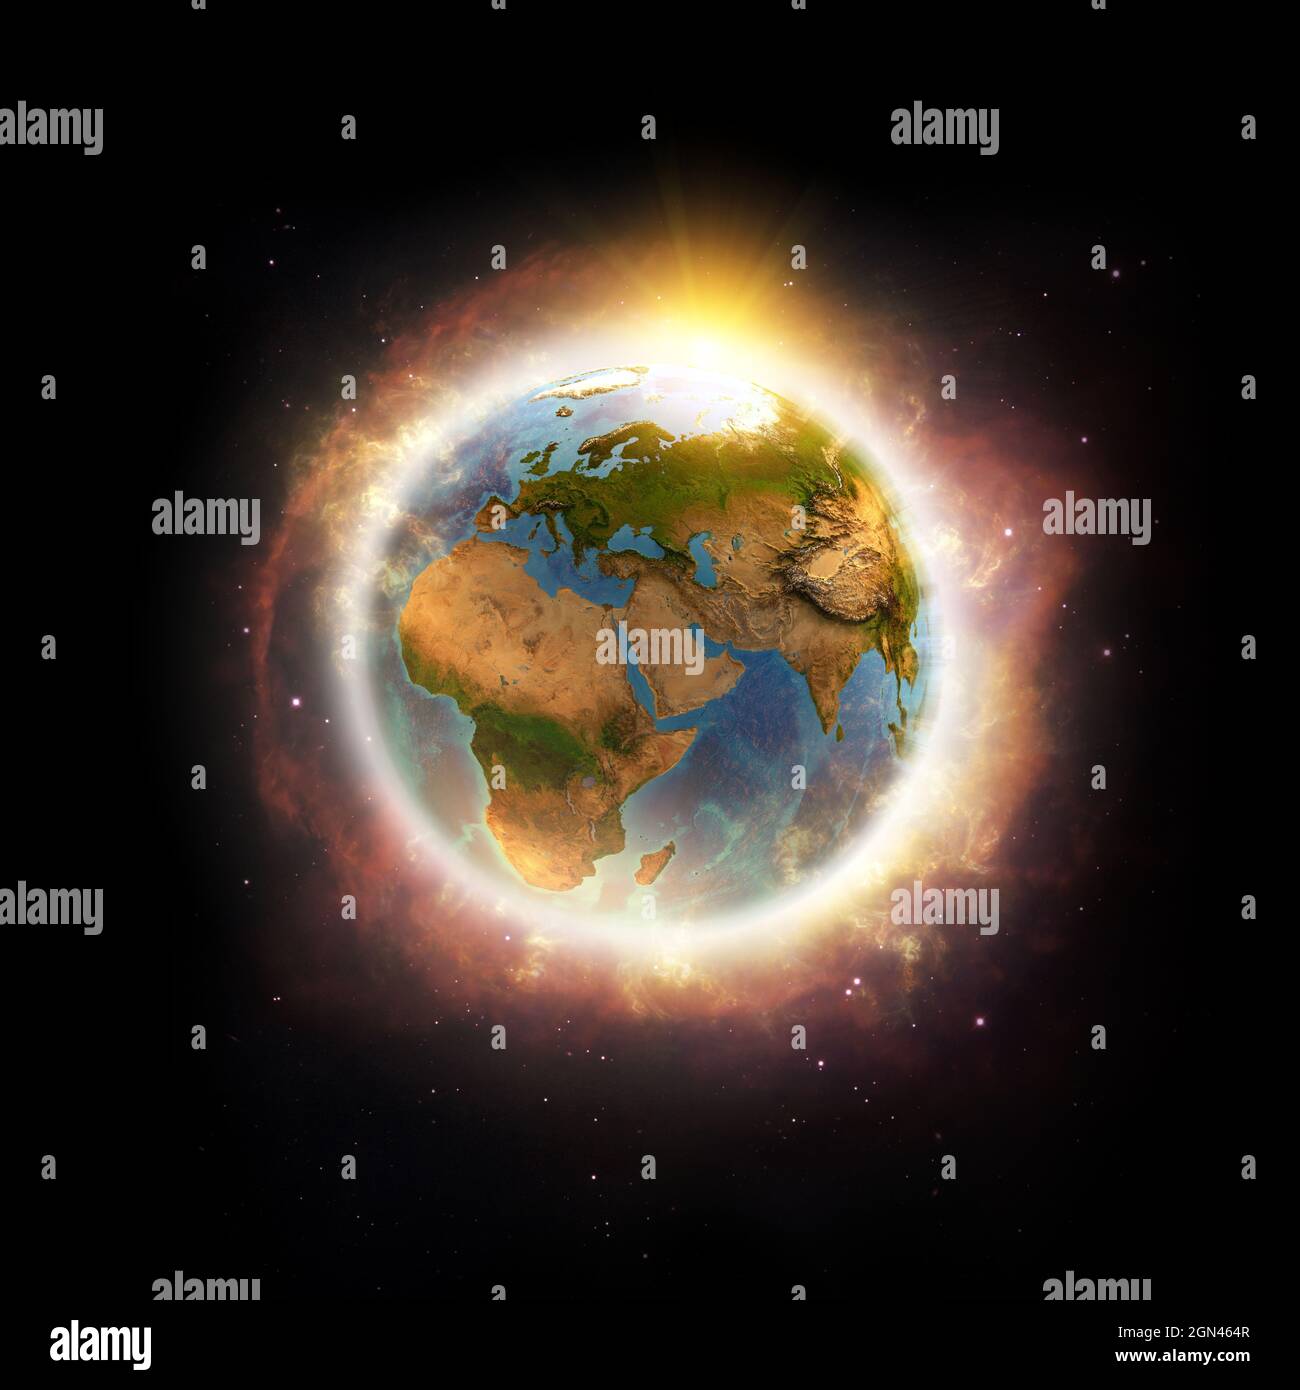 Globale Erwärmung, Klimawandel, weltweite Katastrophe auf dem Planeten Erde. 3D-Illustration - Elemente dieses Bildes, die von der NASA eingerichtet wurden. Stockfoto